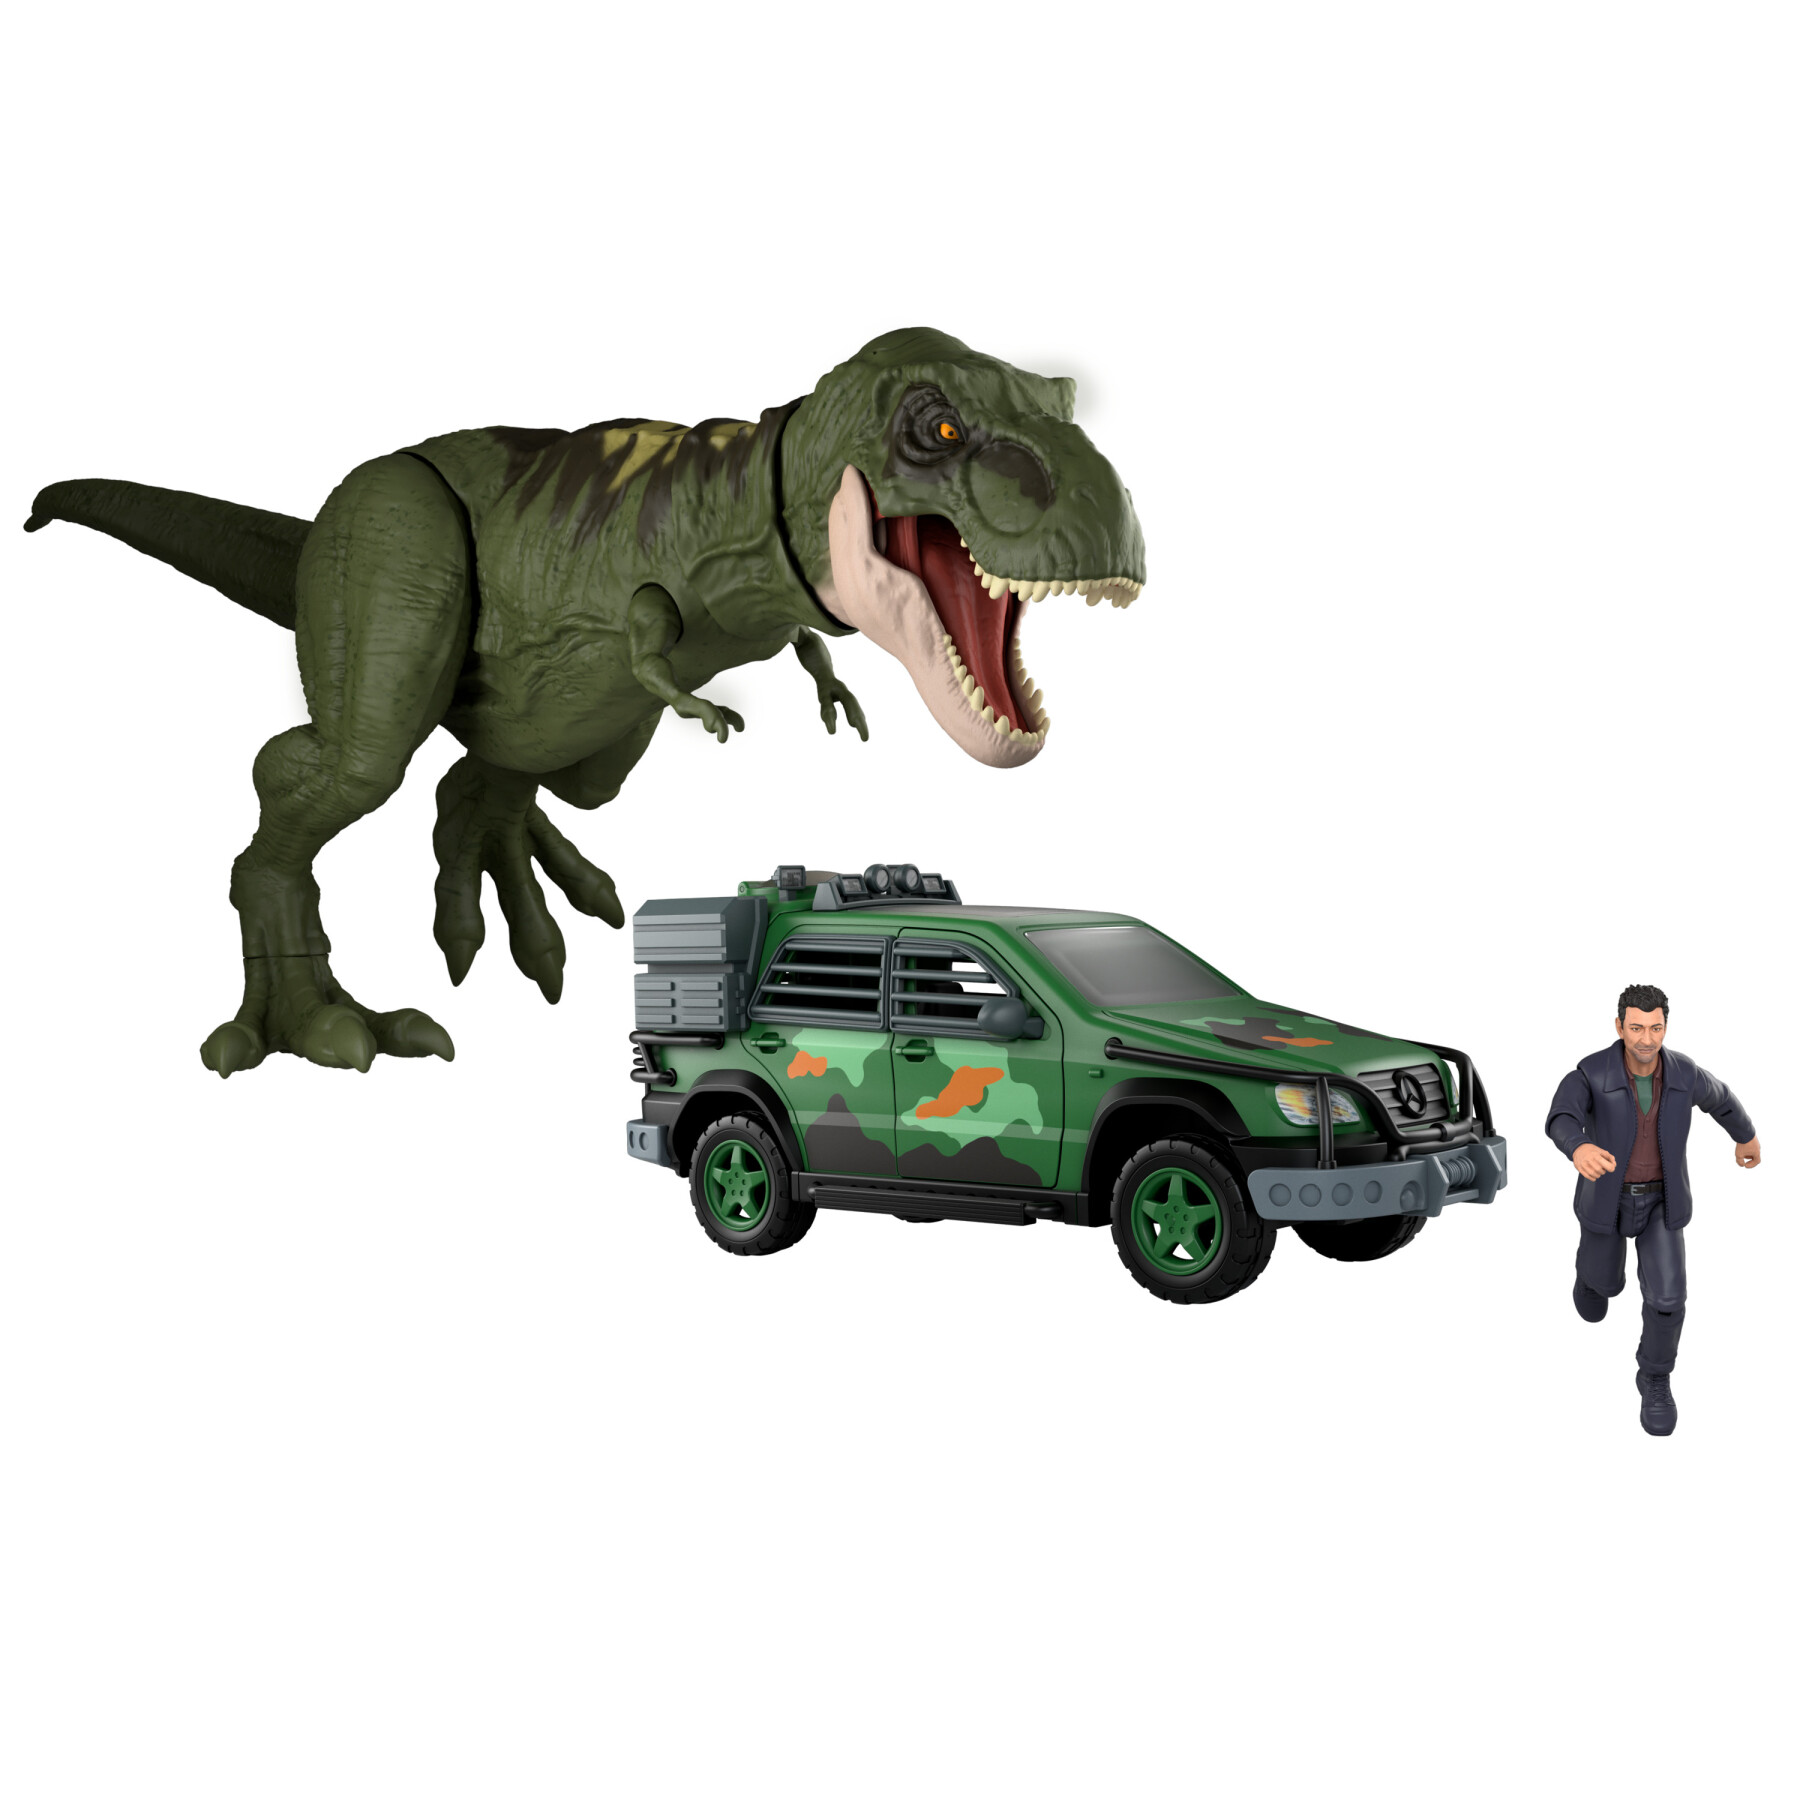 Jurassic world legacy collection il mondo perduto: jurassic park tyrannosaurus rex ambush pack, con 1 dinosauro, 1 veicolo e 1 il dr. ian malcolm - Jurassic World